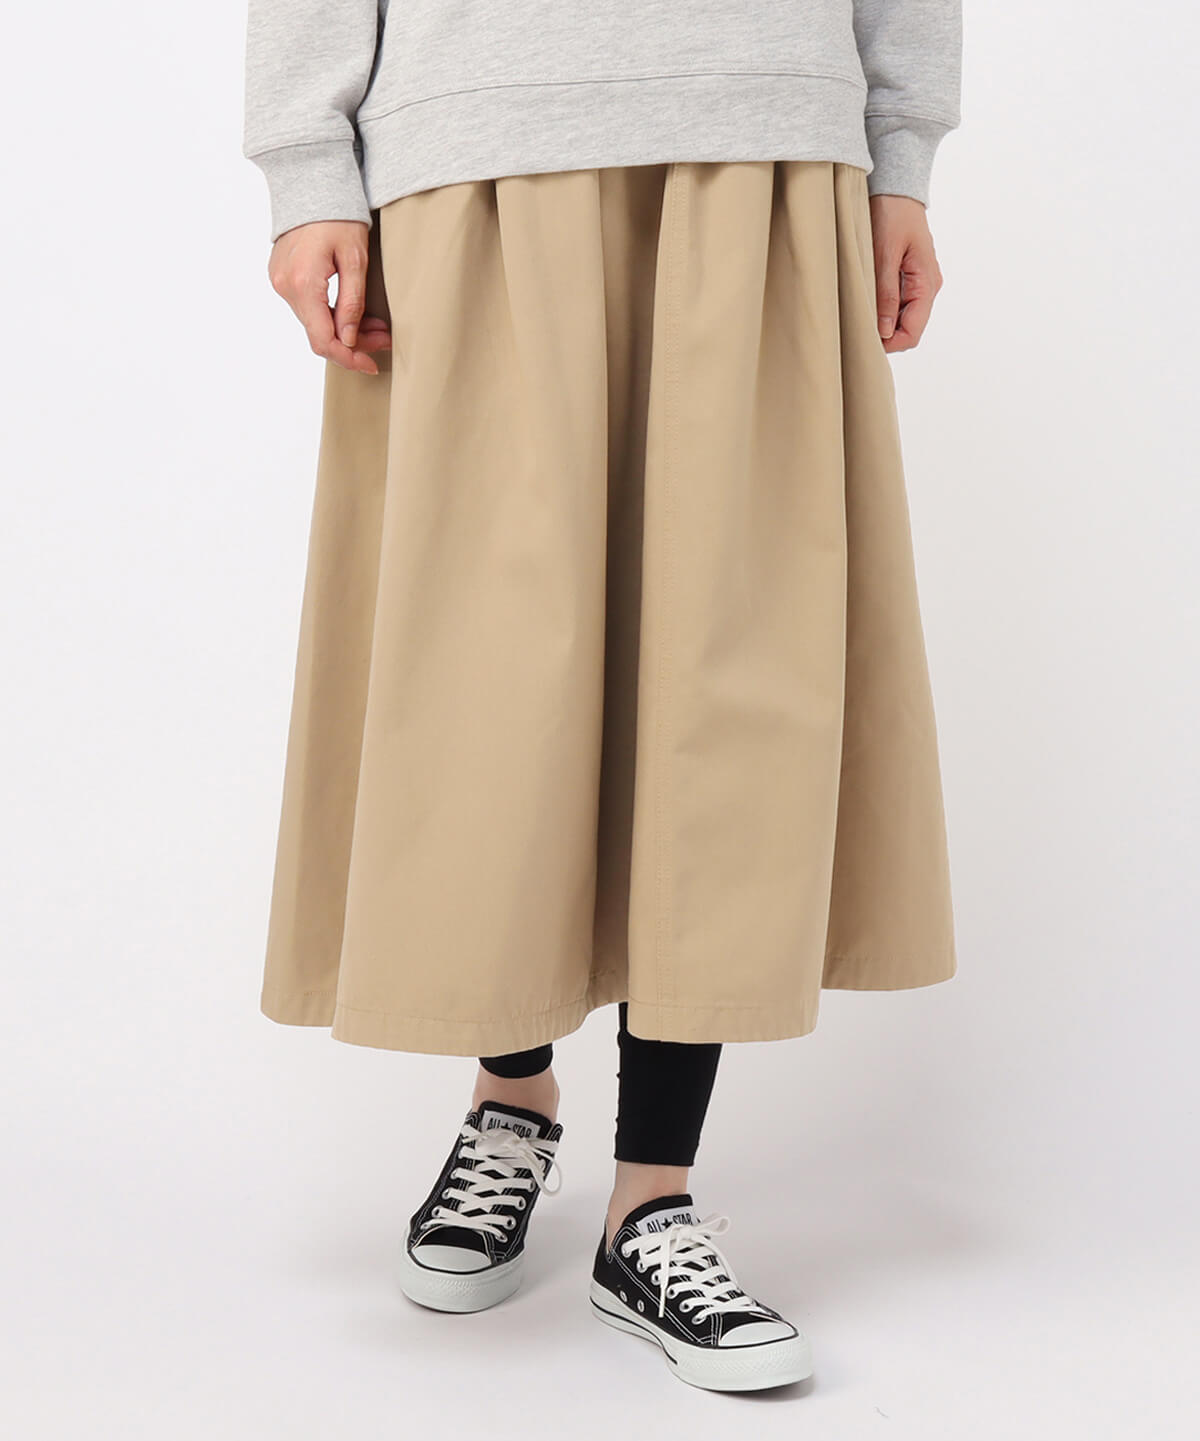 Two Tuck Wide Skirt TC(ツータックワイドスカートTC(スカート｜ボトムス))